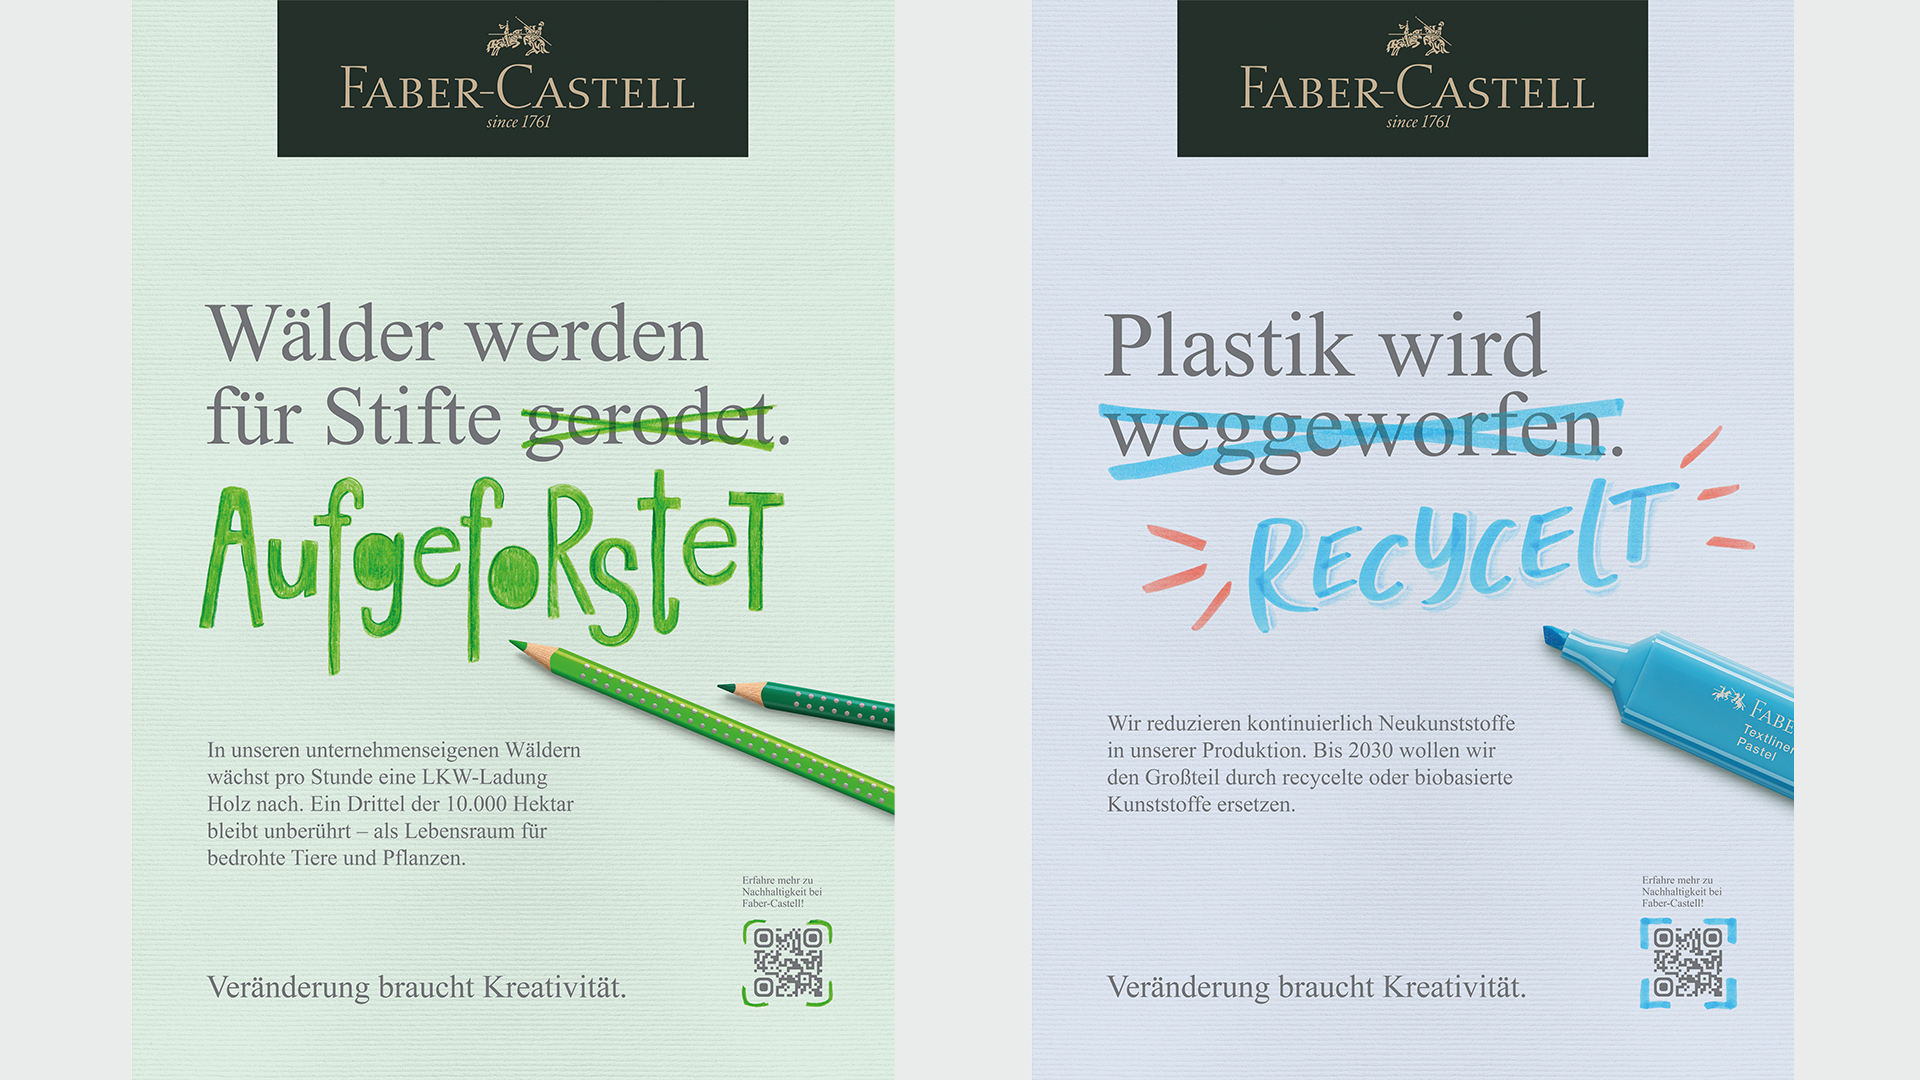 Eine Kampagnenbotschaft: Aufforstung statt Rodung von Wldern - Quelle: Faber-Castell